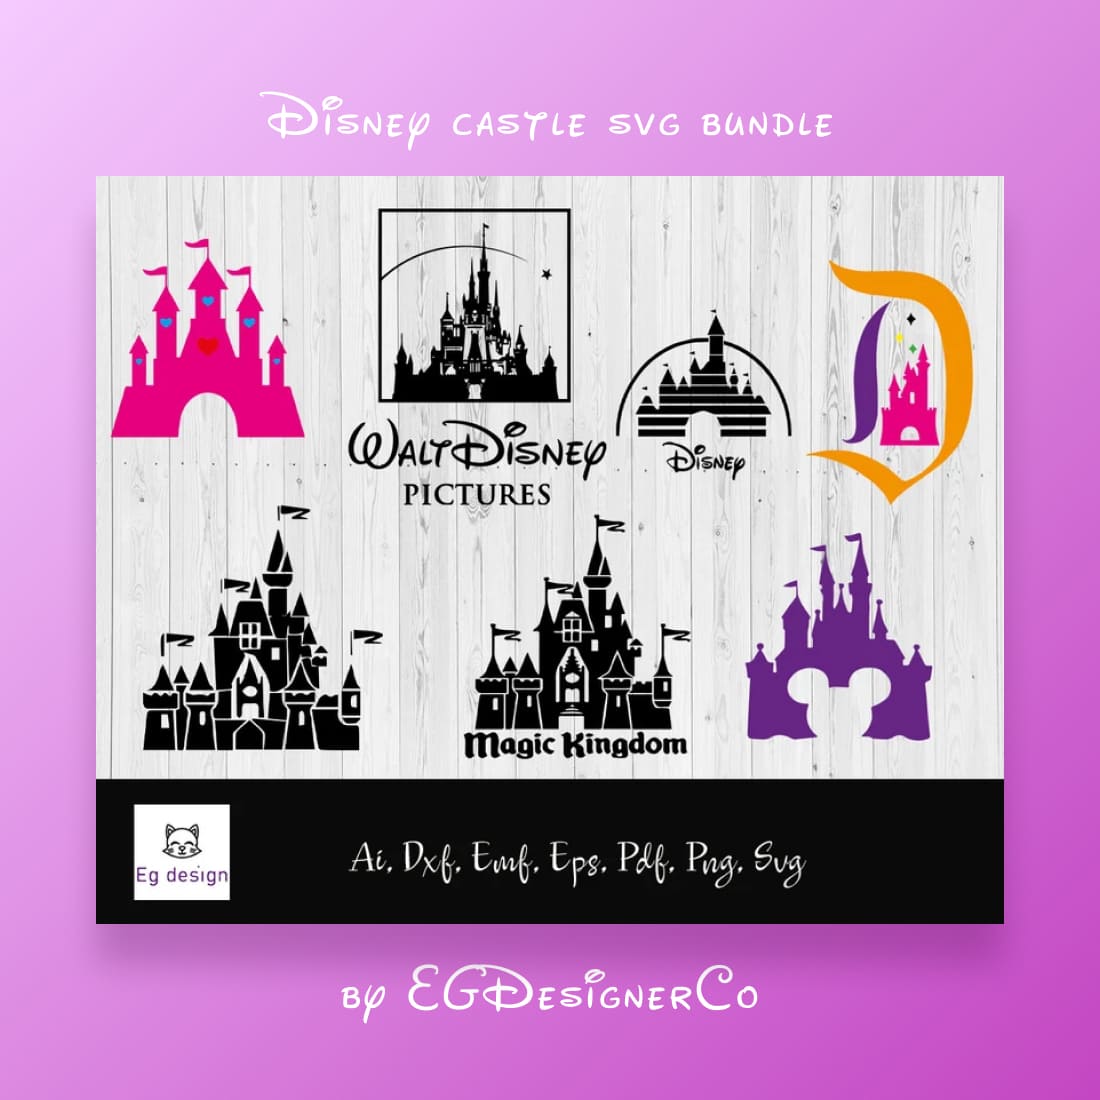 Magic Disney Castle SVG Bundle main cover.